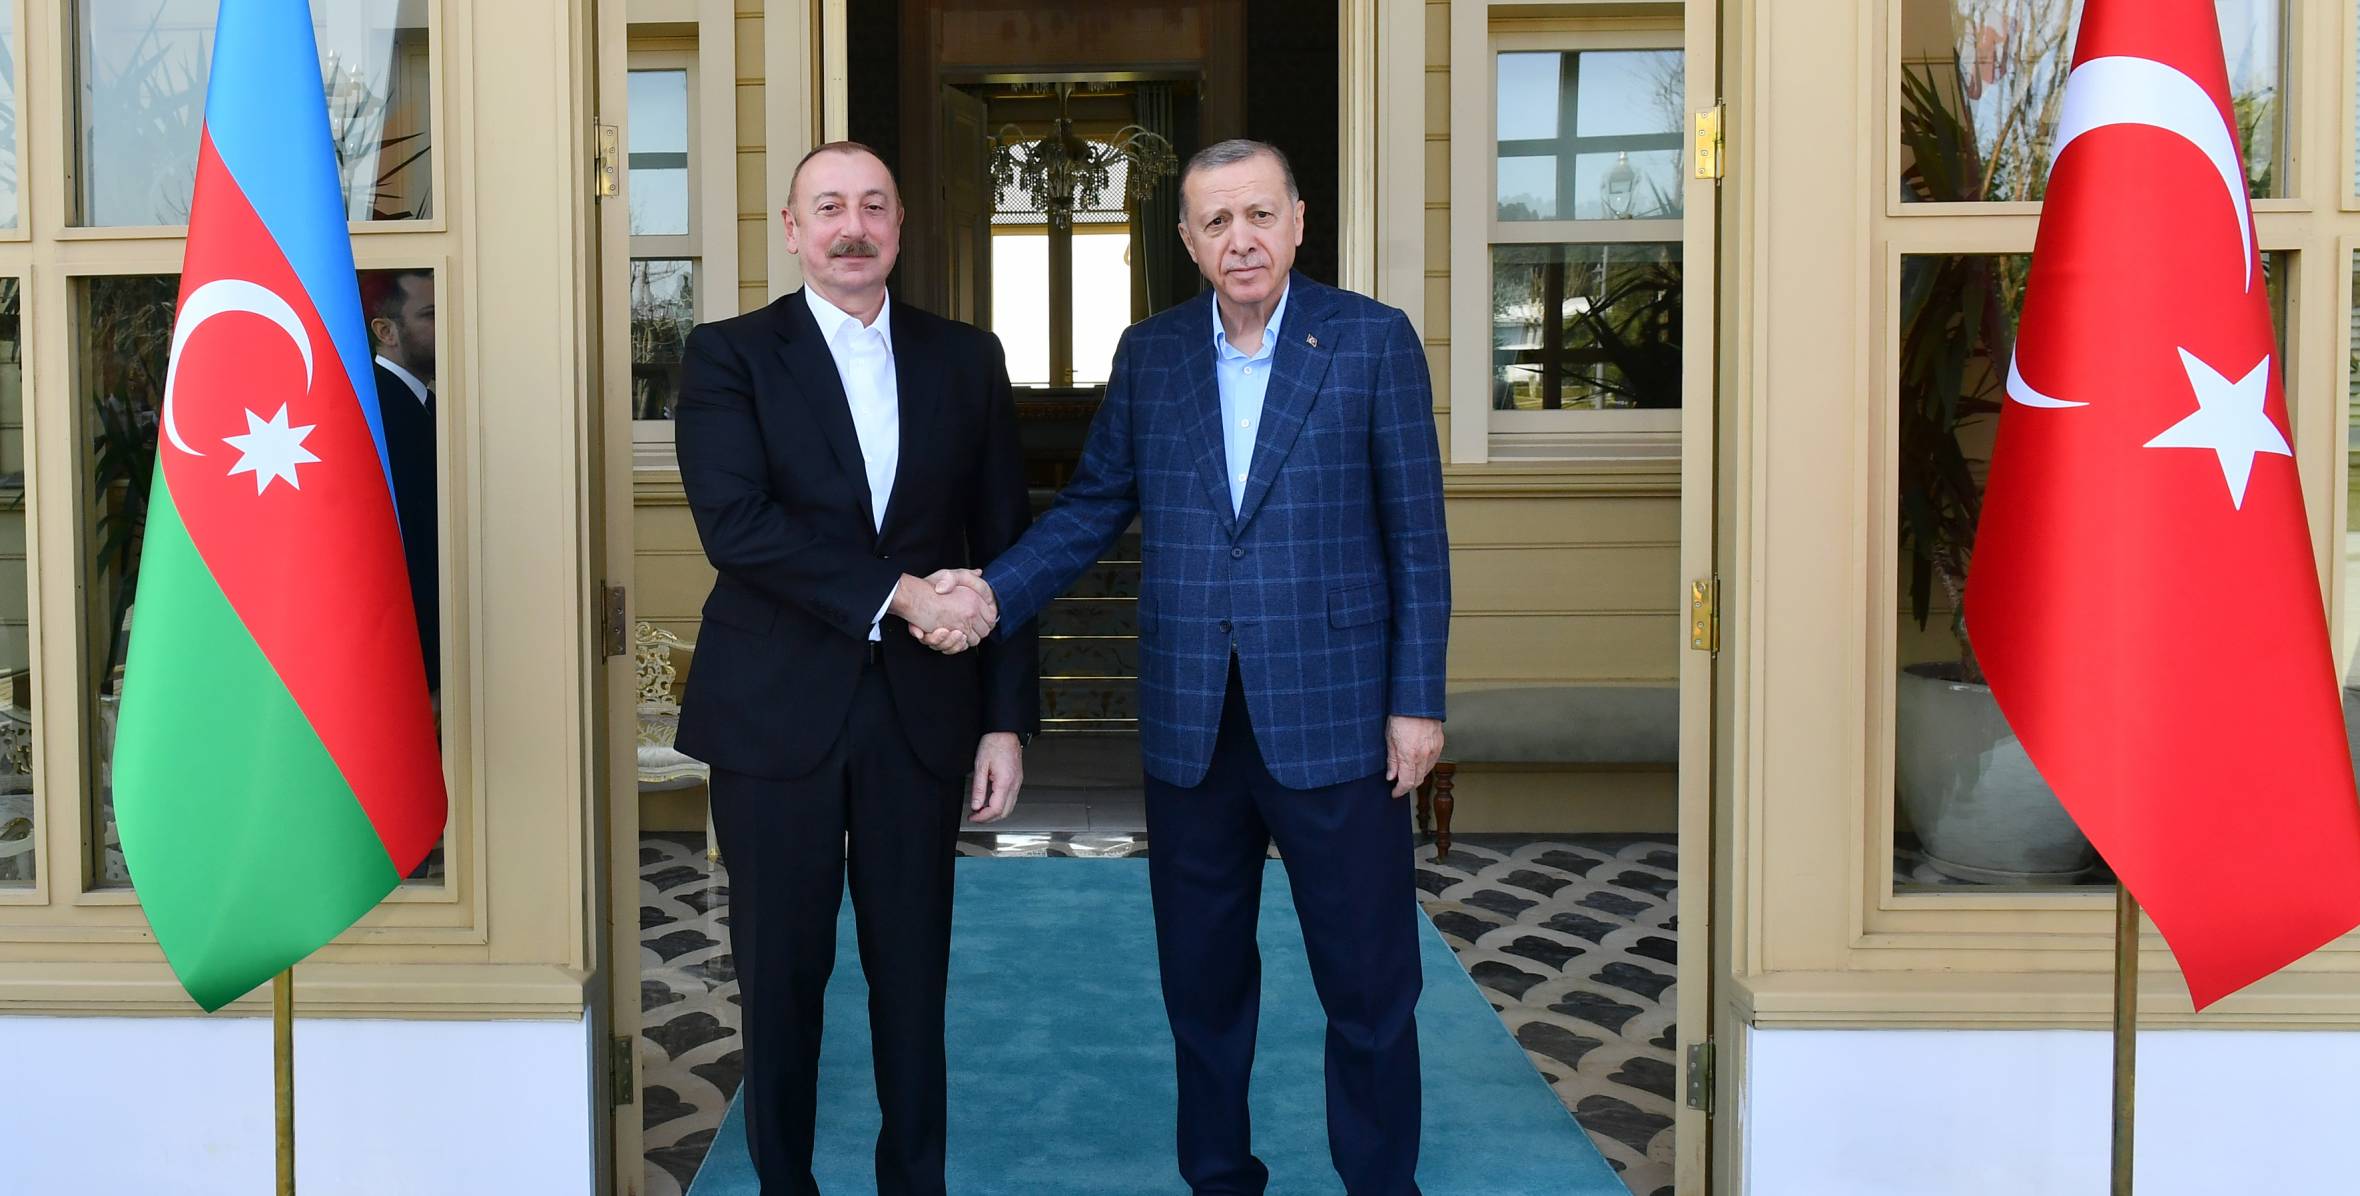 Ilham Aliyev met with President of Türkiye Recep Tayyip Erdogan in Istanbul